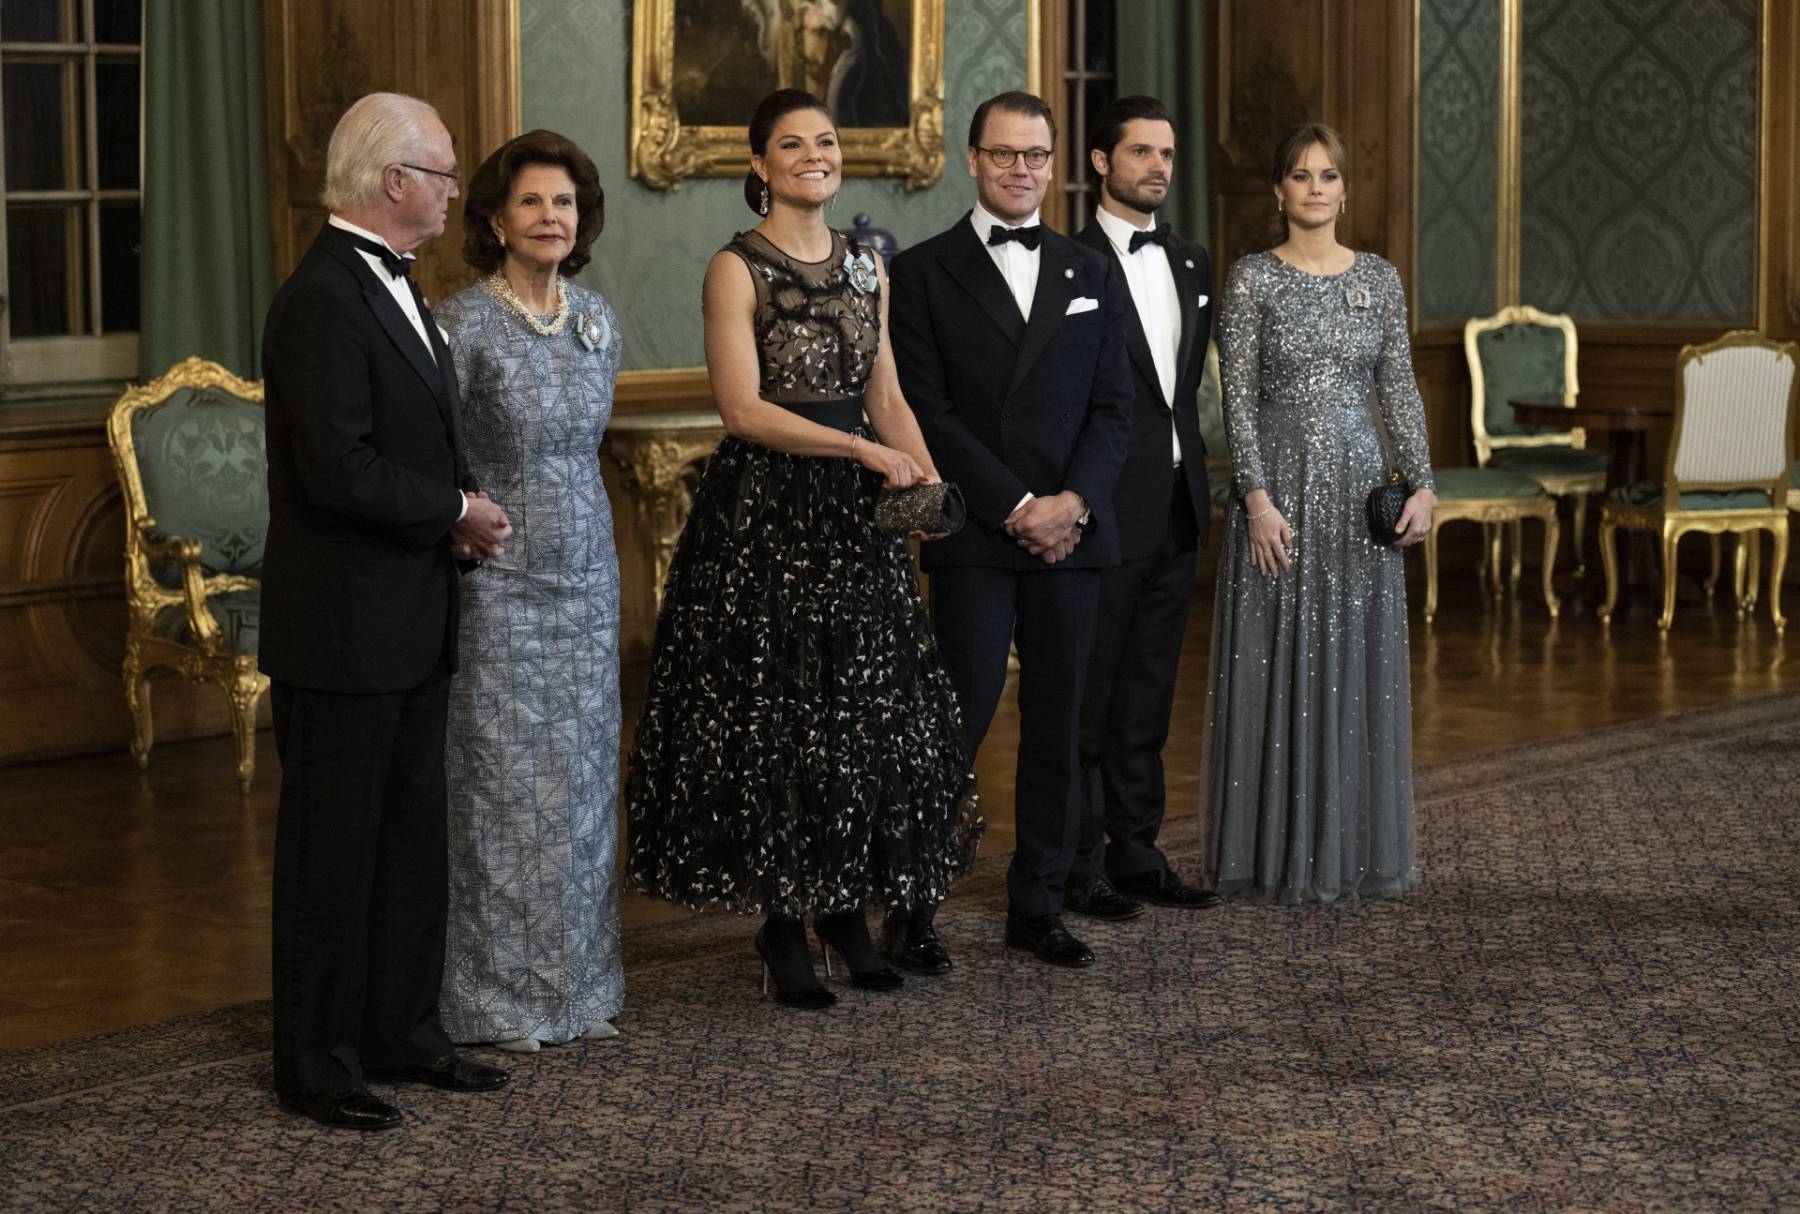 El rey Carlos Gustavo, la reina Silvia, la princesa heredera Victoria, el príncipe Daniel, el príncipe Carl Philip y la princesa Sofía en la Cena de Suecia en el Palacio Real de Estocolmo / Gtres